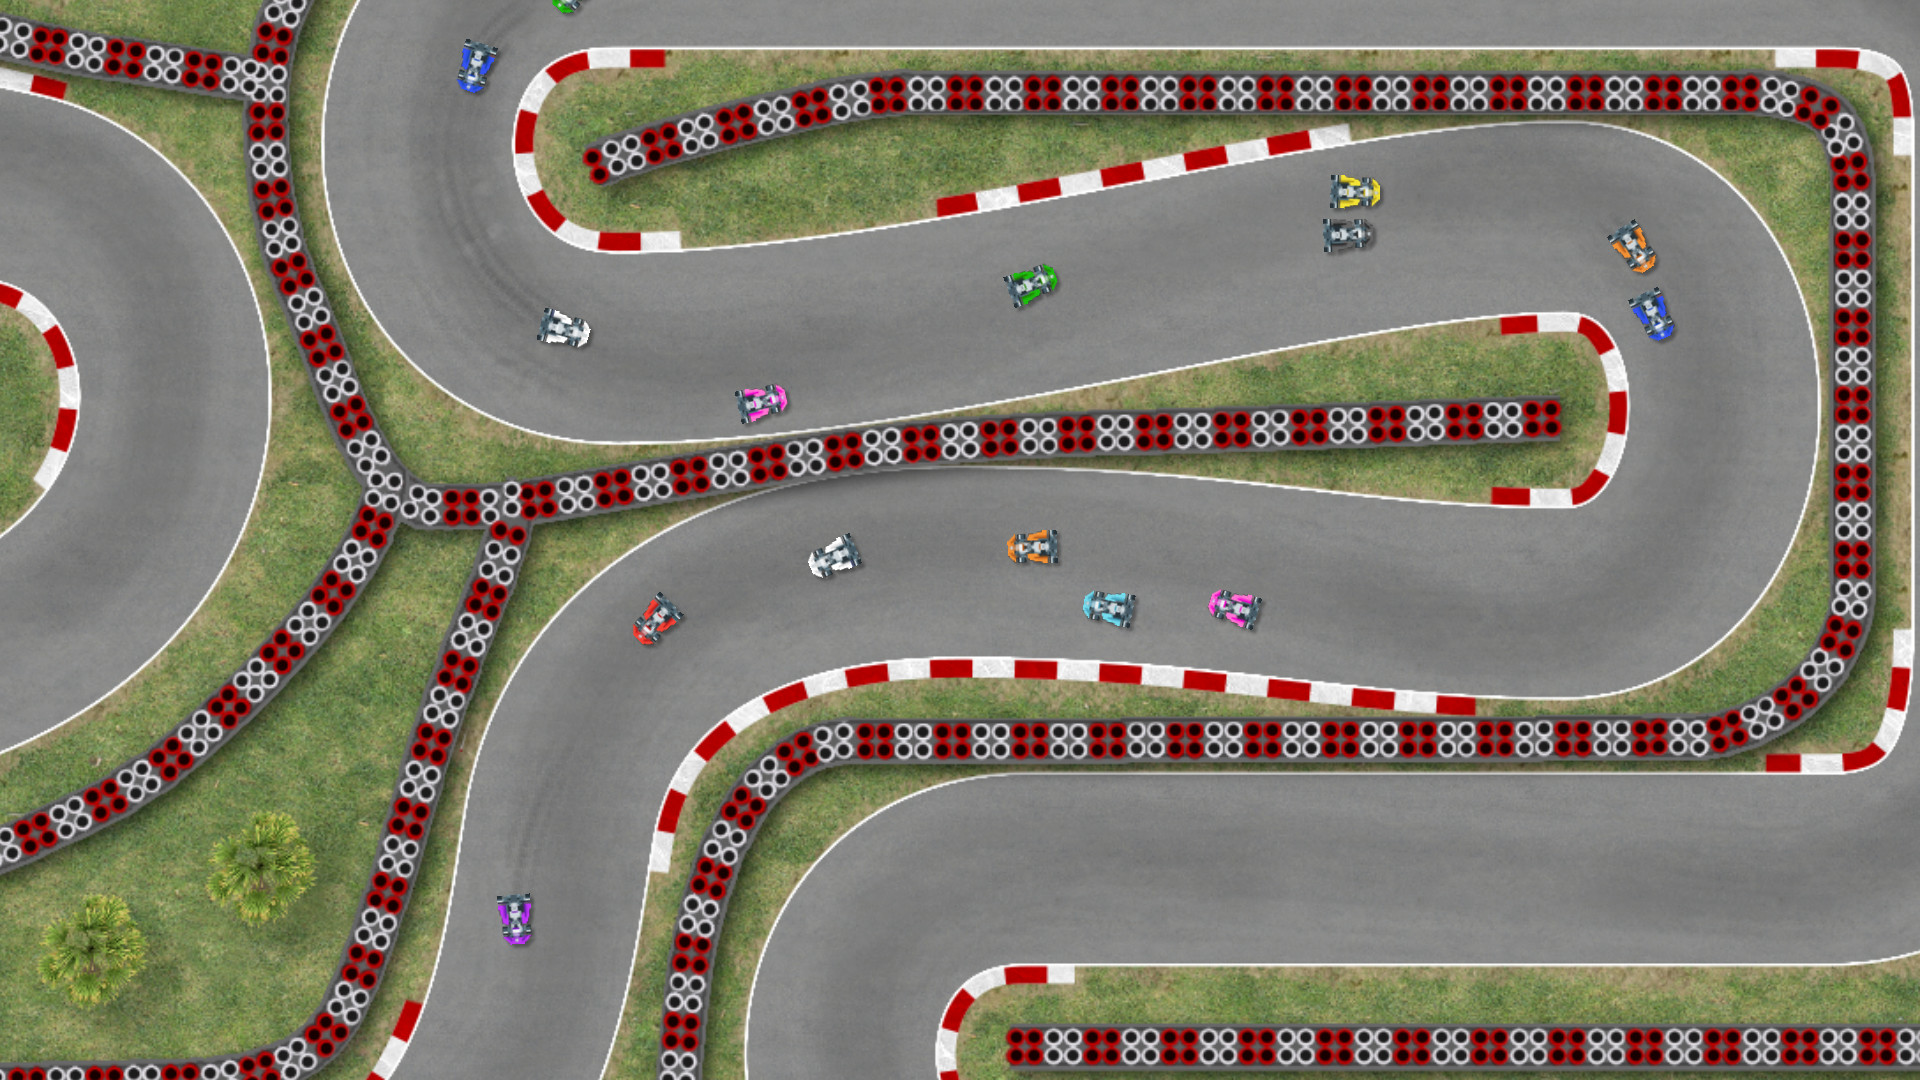 Ultimate Racing 2D screenshot